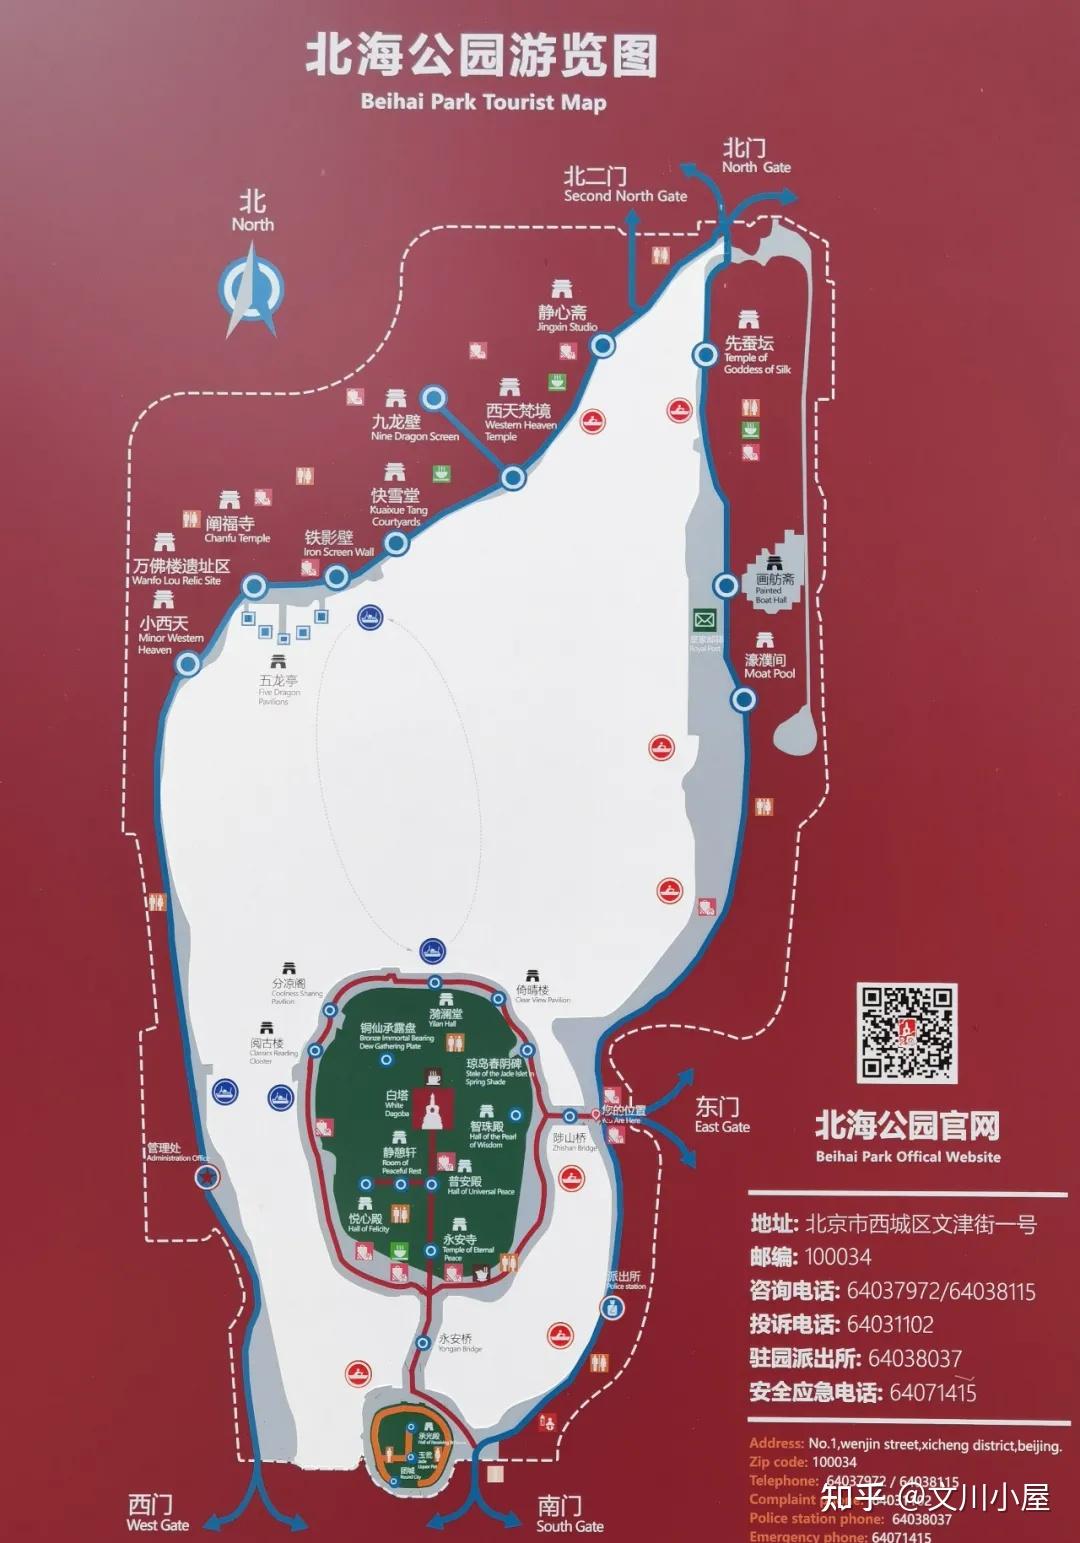 交通情况:北海公园位于北京市中心区,东邻景山,南濒中南海,北连什刹海